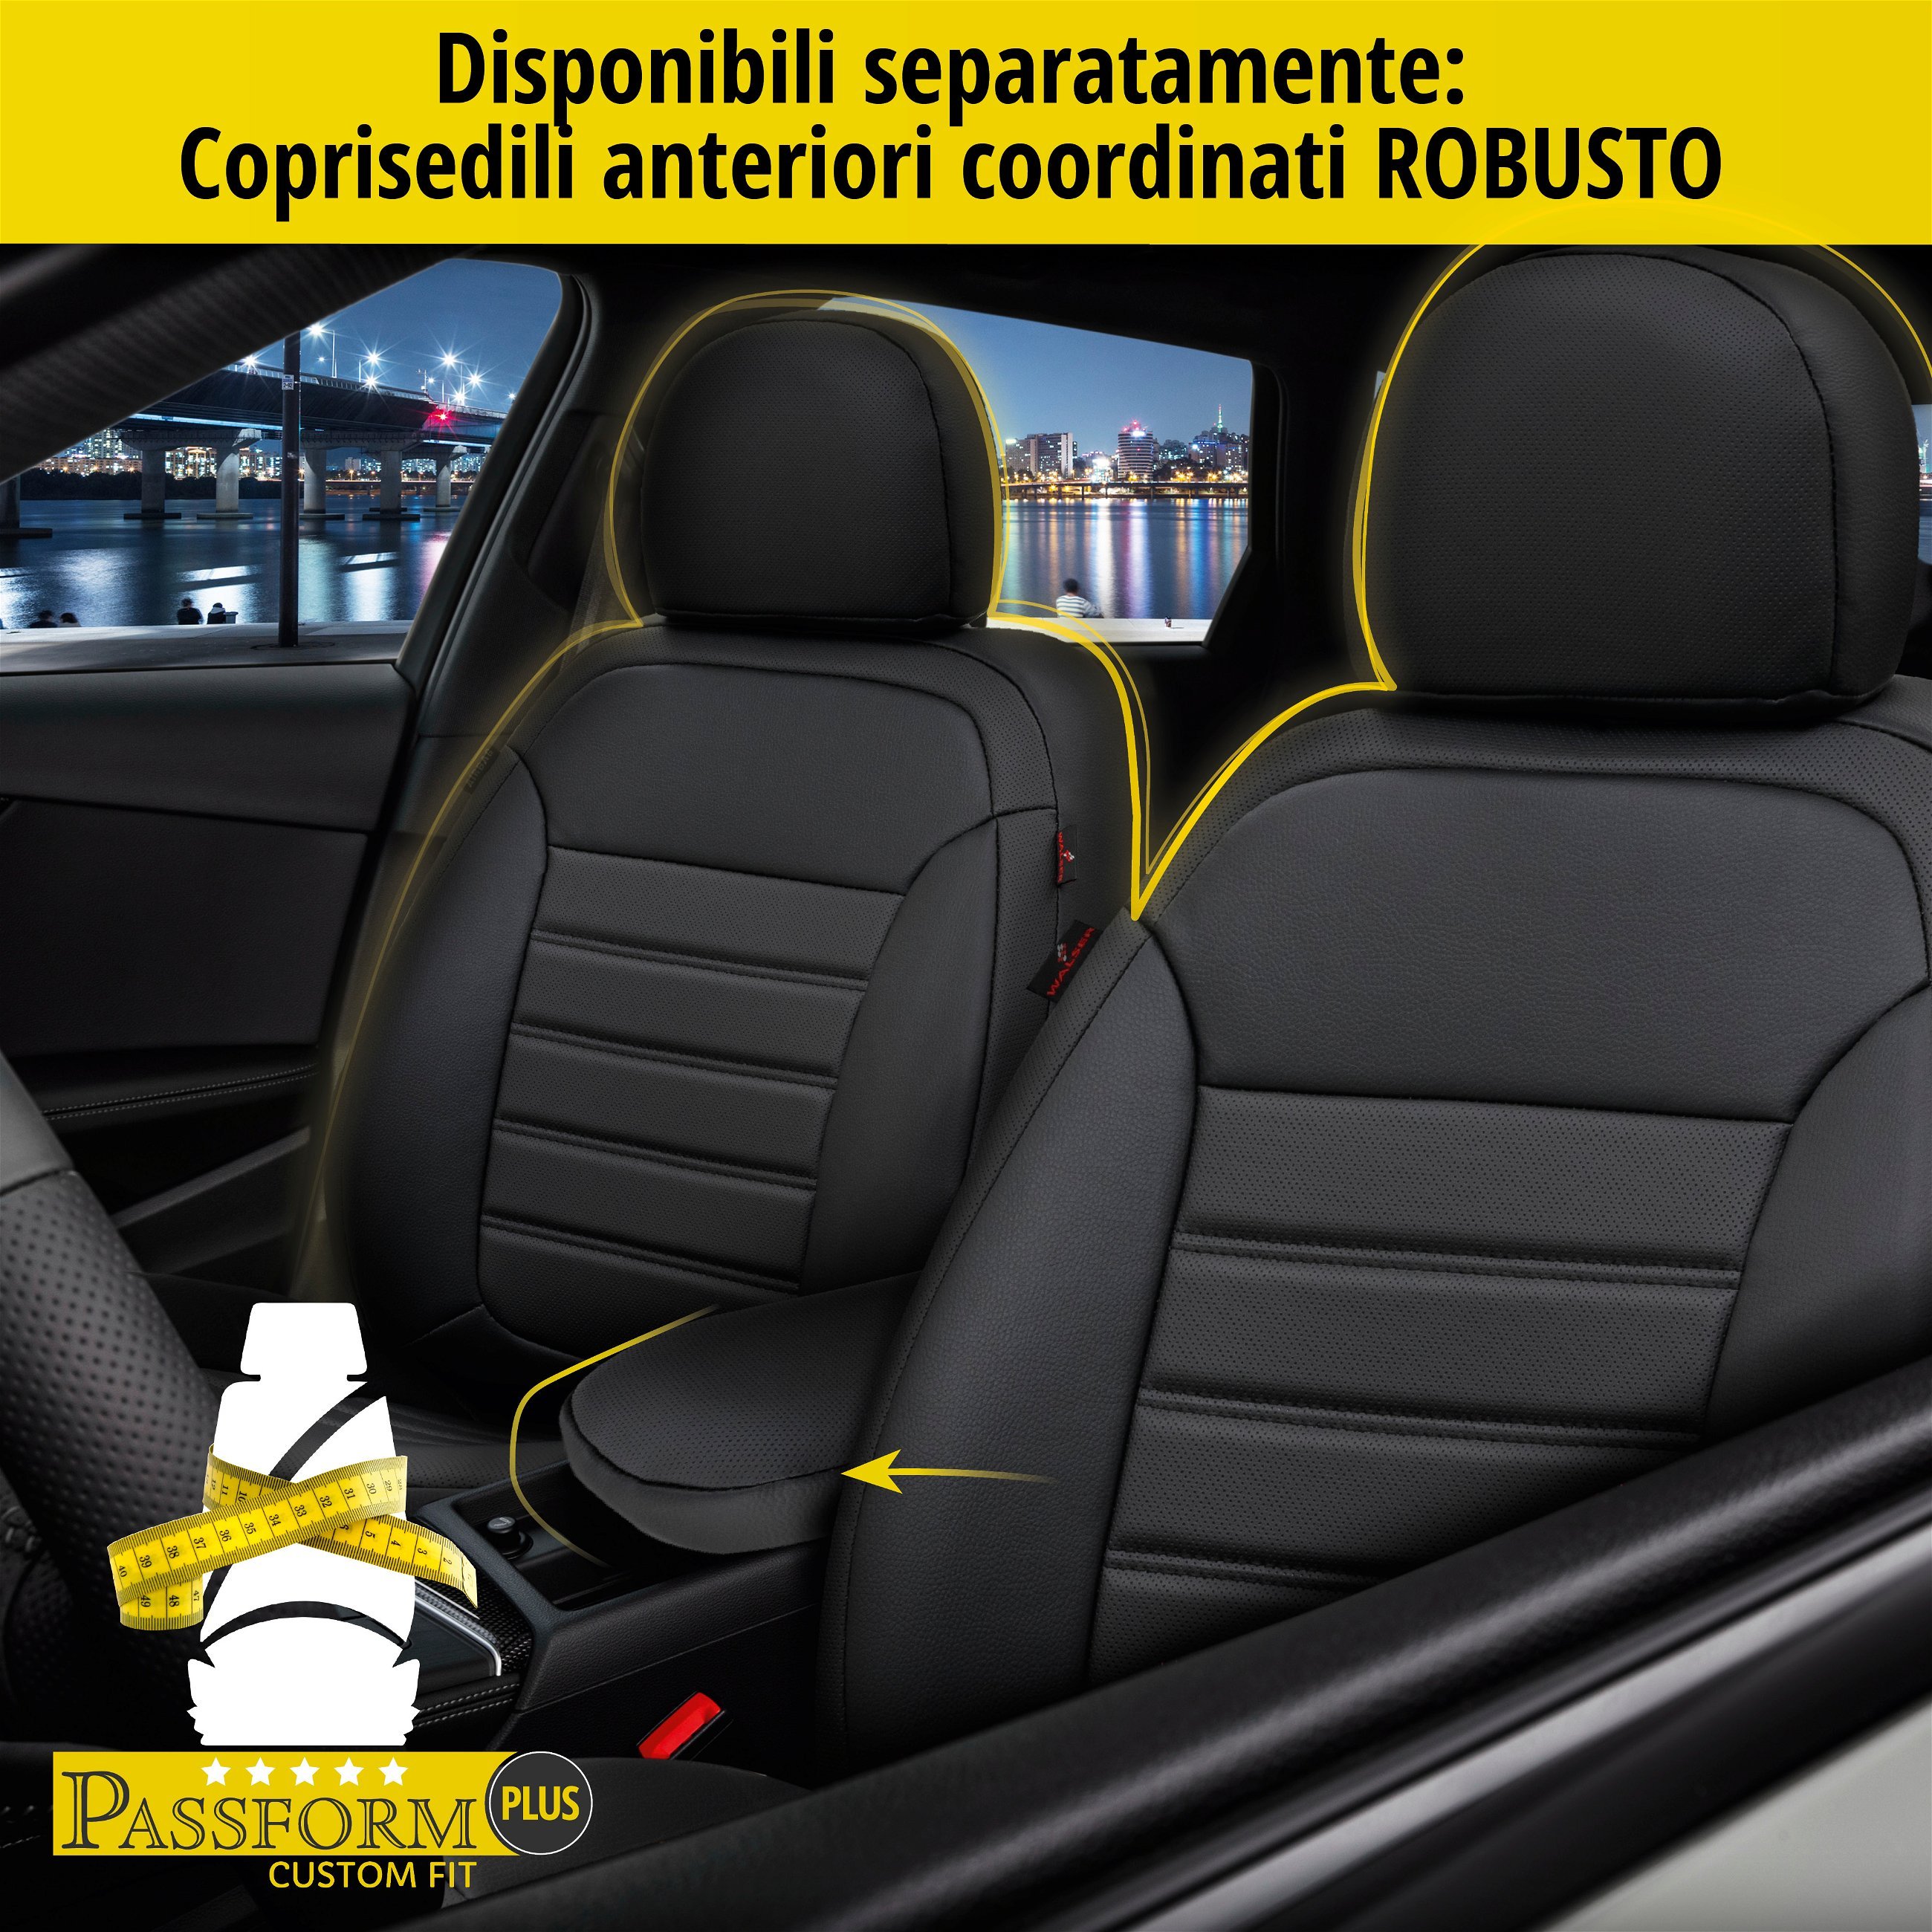 Coprisedili Robusto per VW Golf 7 Trendline 08/2012-03/2021, 1 coprisedili posteriore per sedili normali